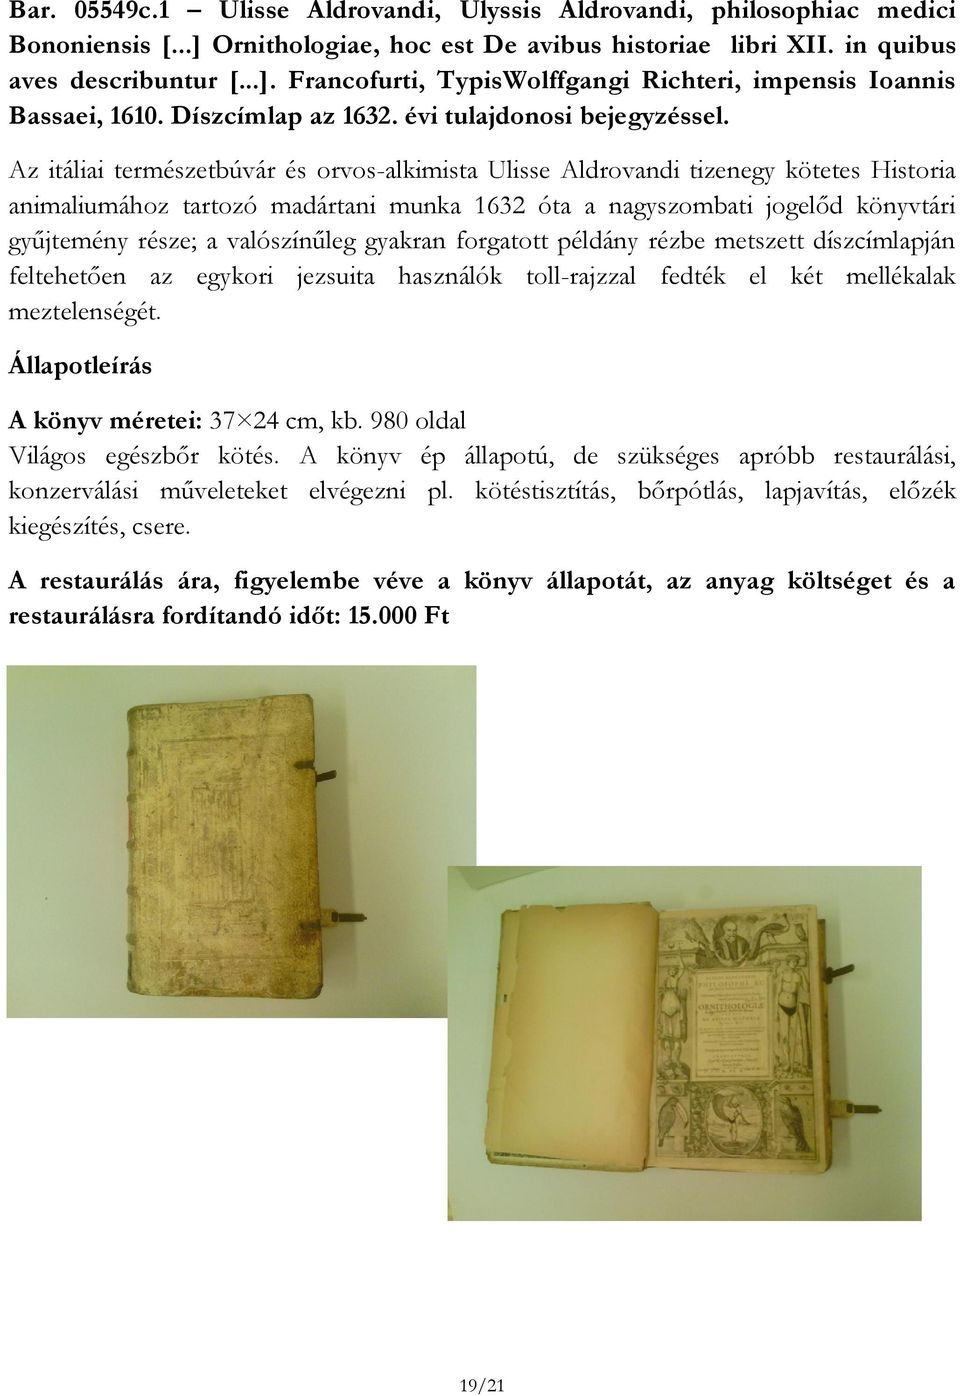 Az itáliai természetbúvár és orvos-alkimista Ulisse Aldrovandi tizenegy kötetes Historia animaliumához tartozó madártani munka 1632 óta a nagyszombati jogelőd könyvtári gyűjtemény része; a